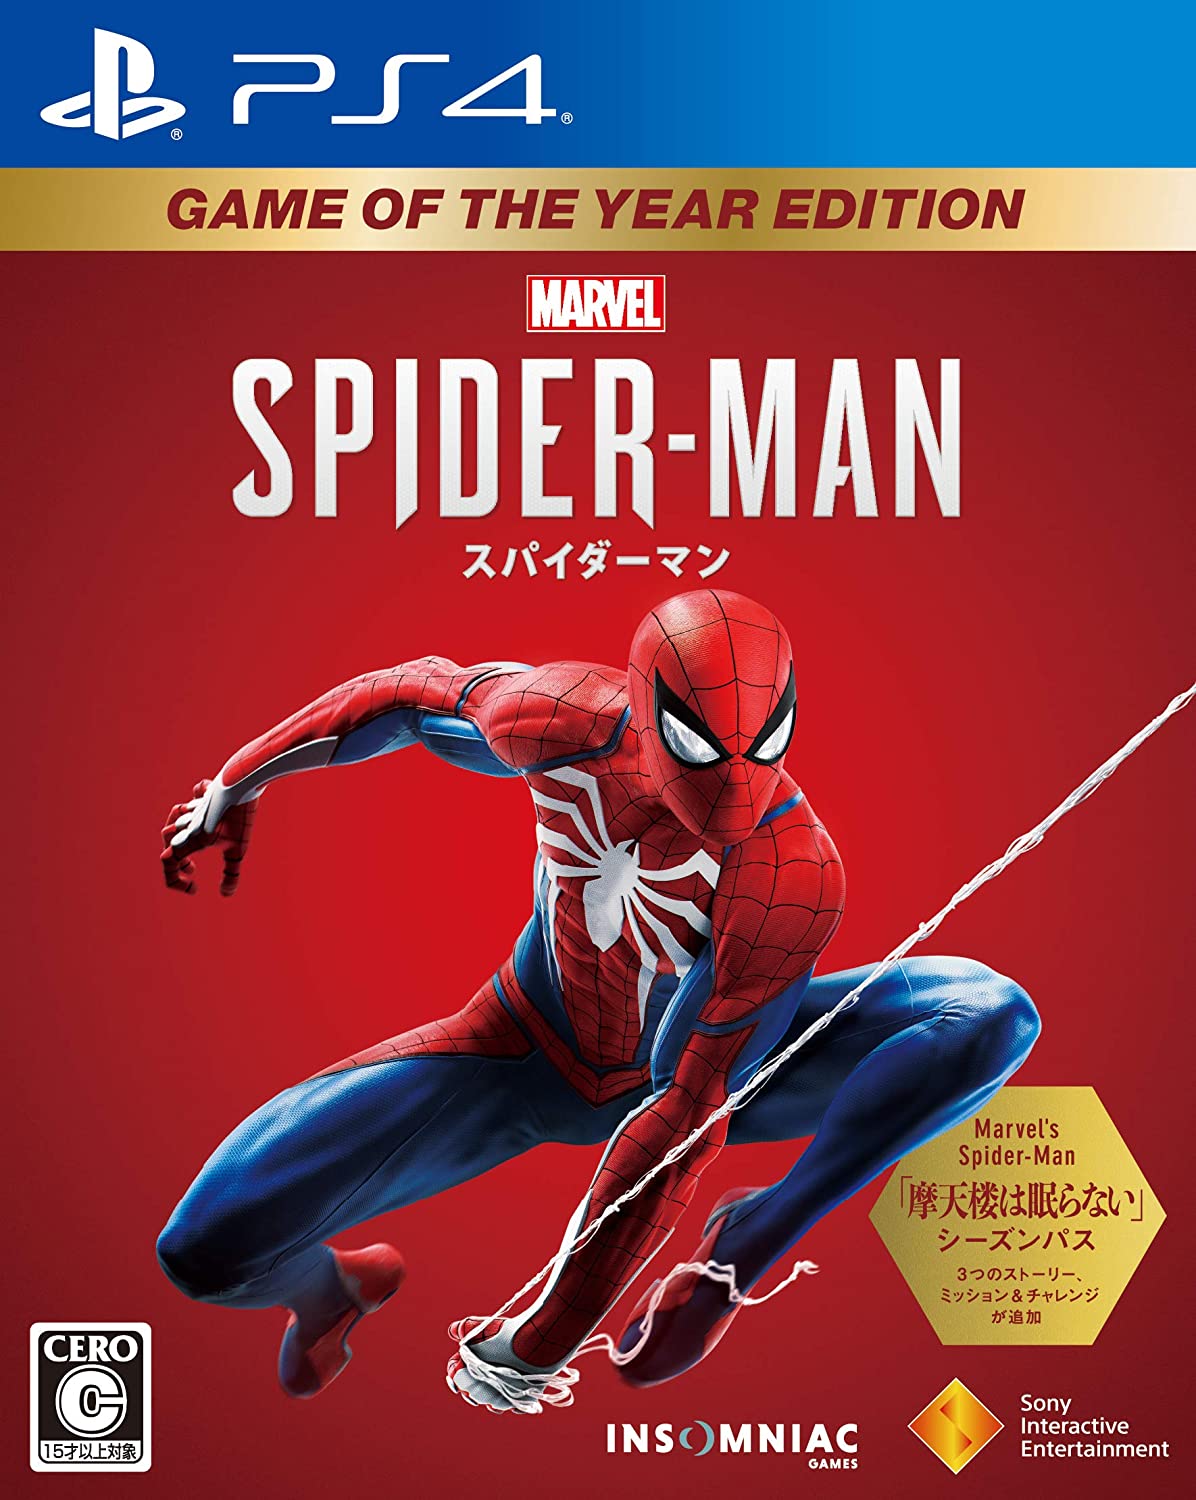 【送料無料】【中古】PS4 PlayStation 4 Marvel 039 s Spider-Man Game of the Year Edition スパイダーマン